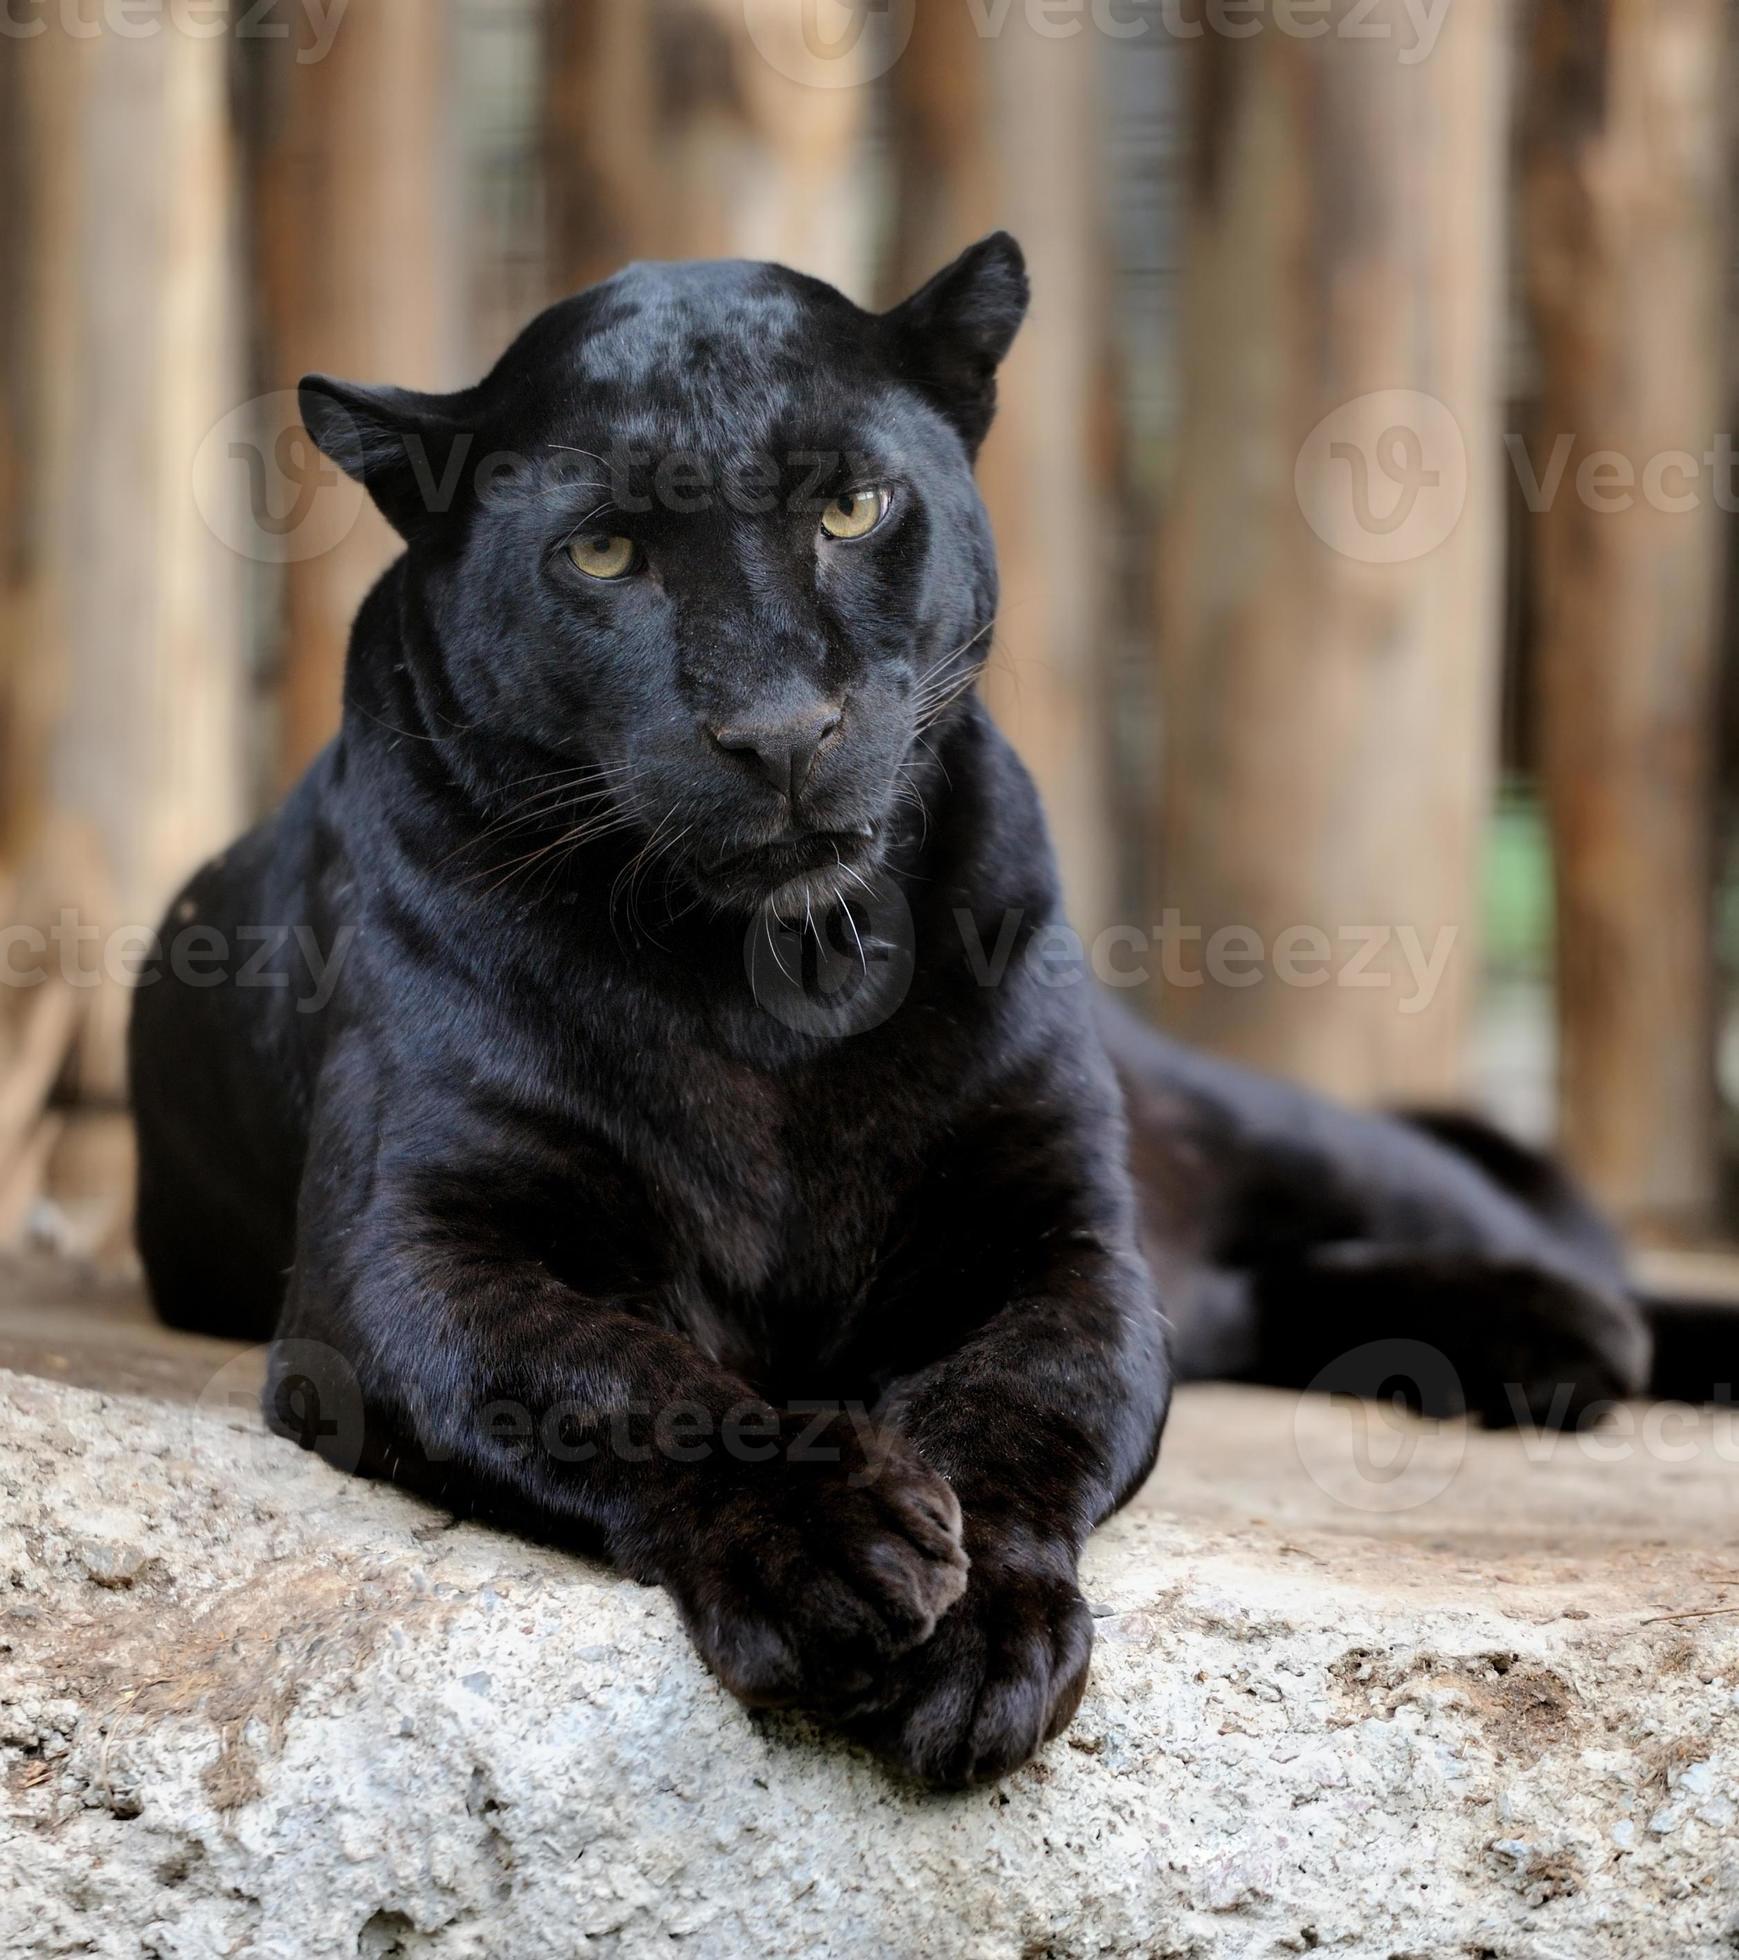 svart leopard foto